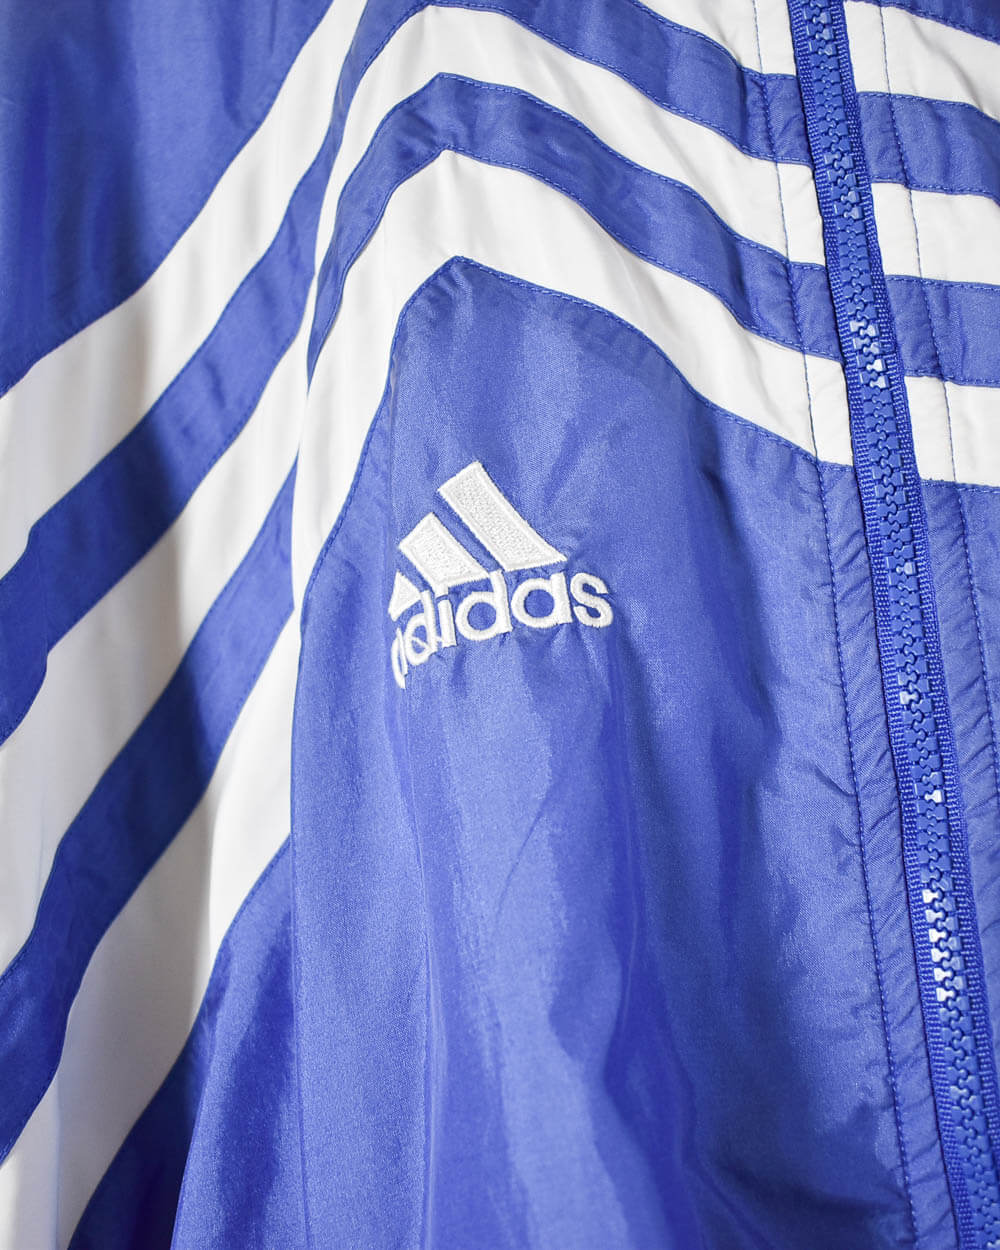 Blue Adidas Shell Jacket - Large